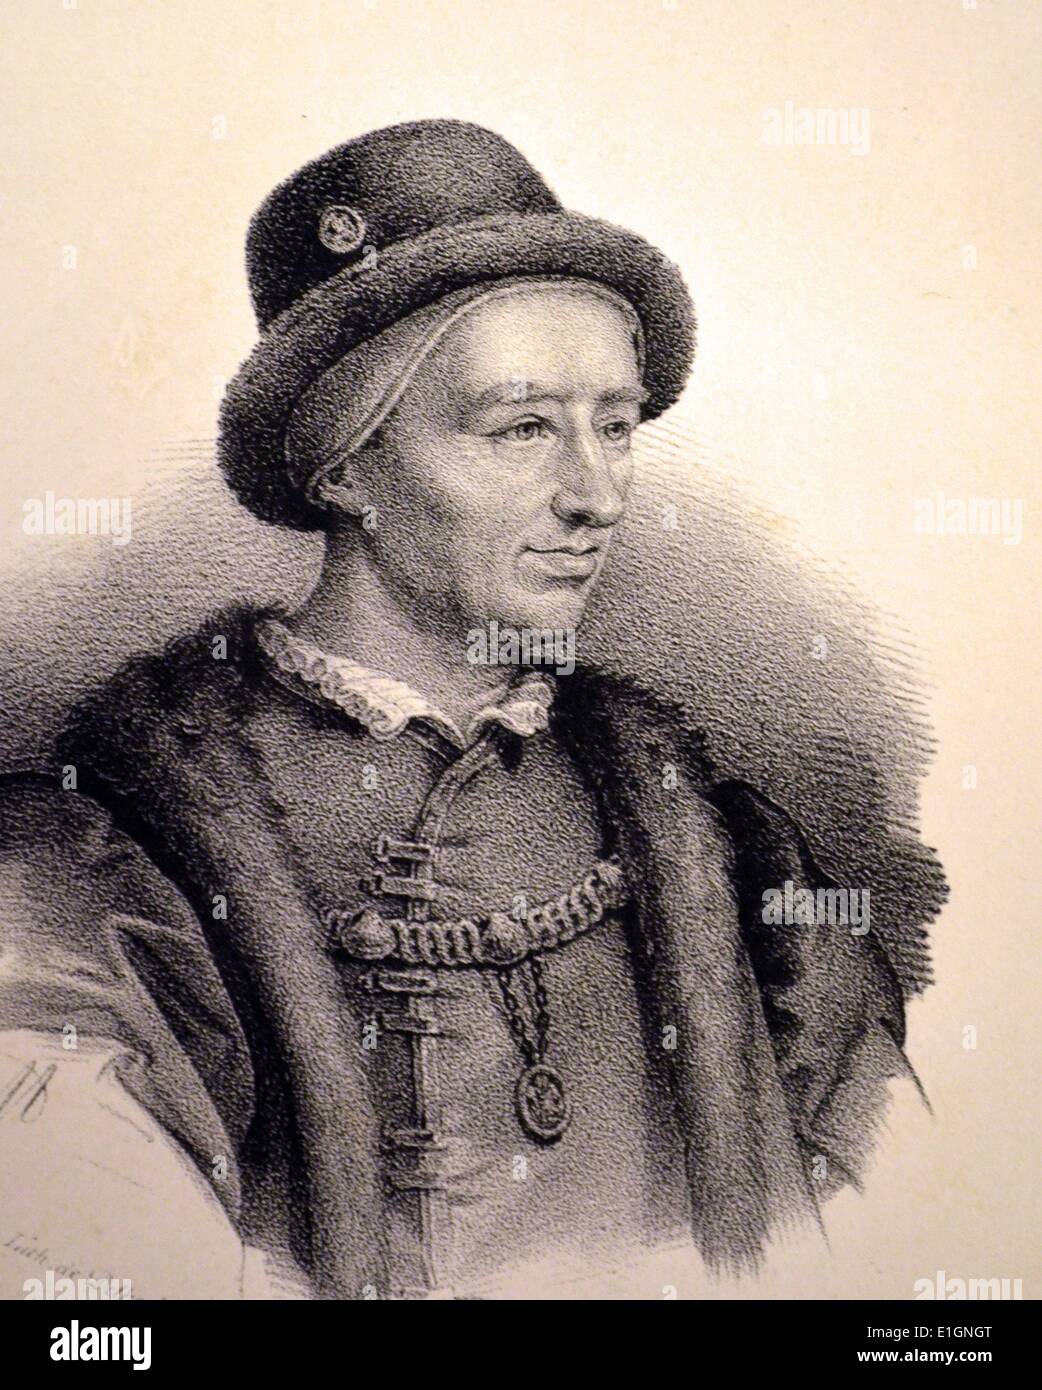 Louis XI (1423-1483) der kluge, König von Frankreich 1416-1483.  Lithographie, Paris, c1840. Stockfoto